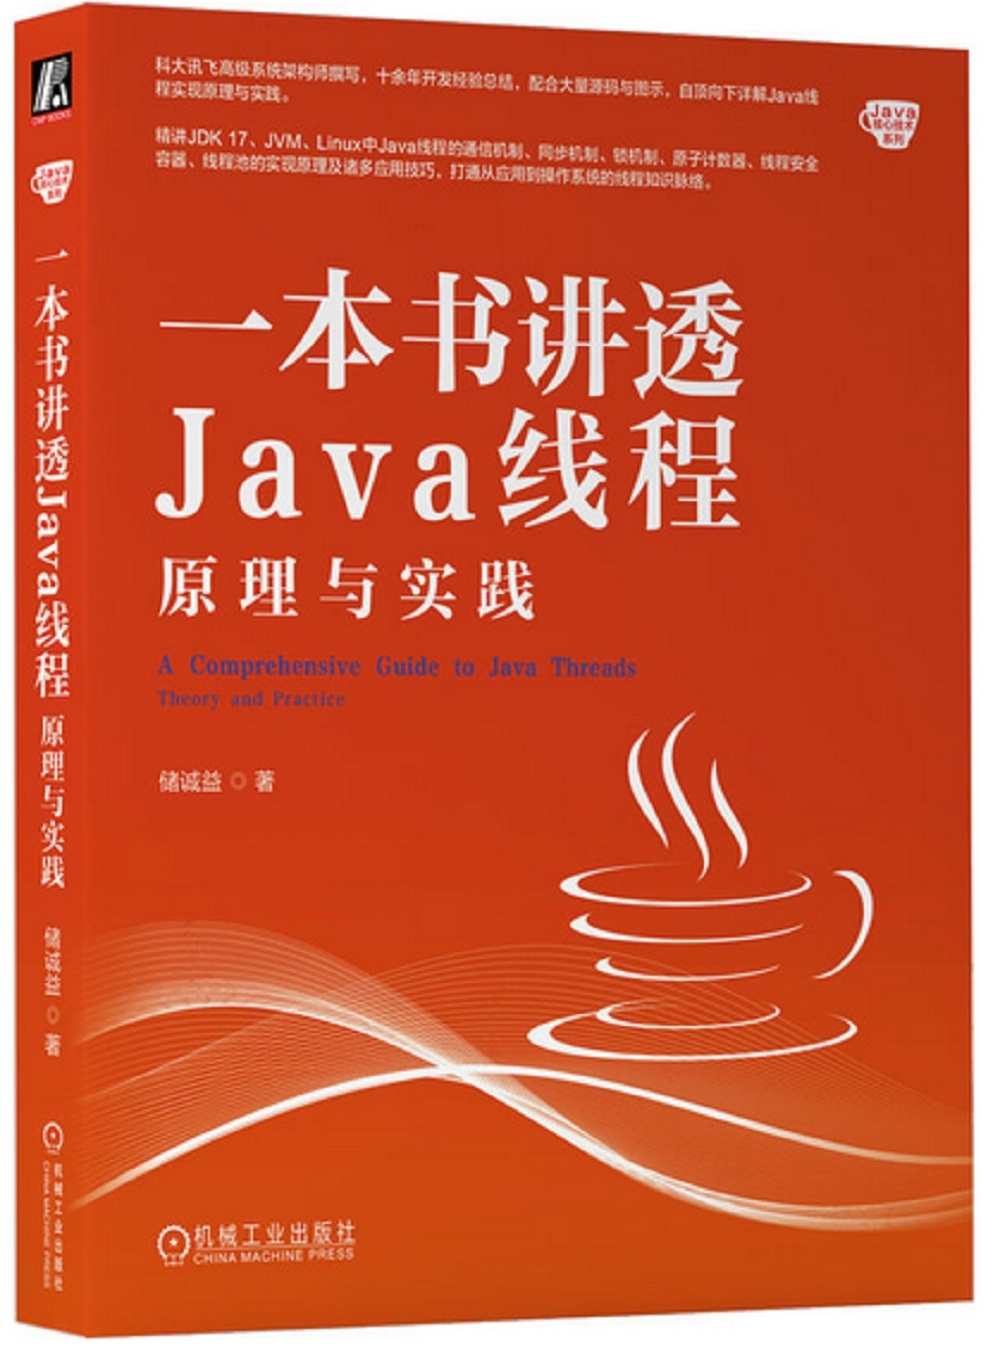 一本書講透Java線程：原理與實踐